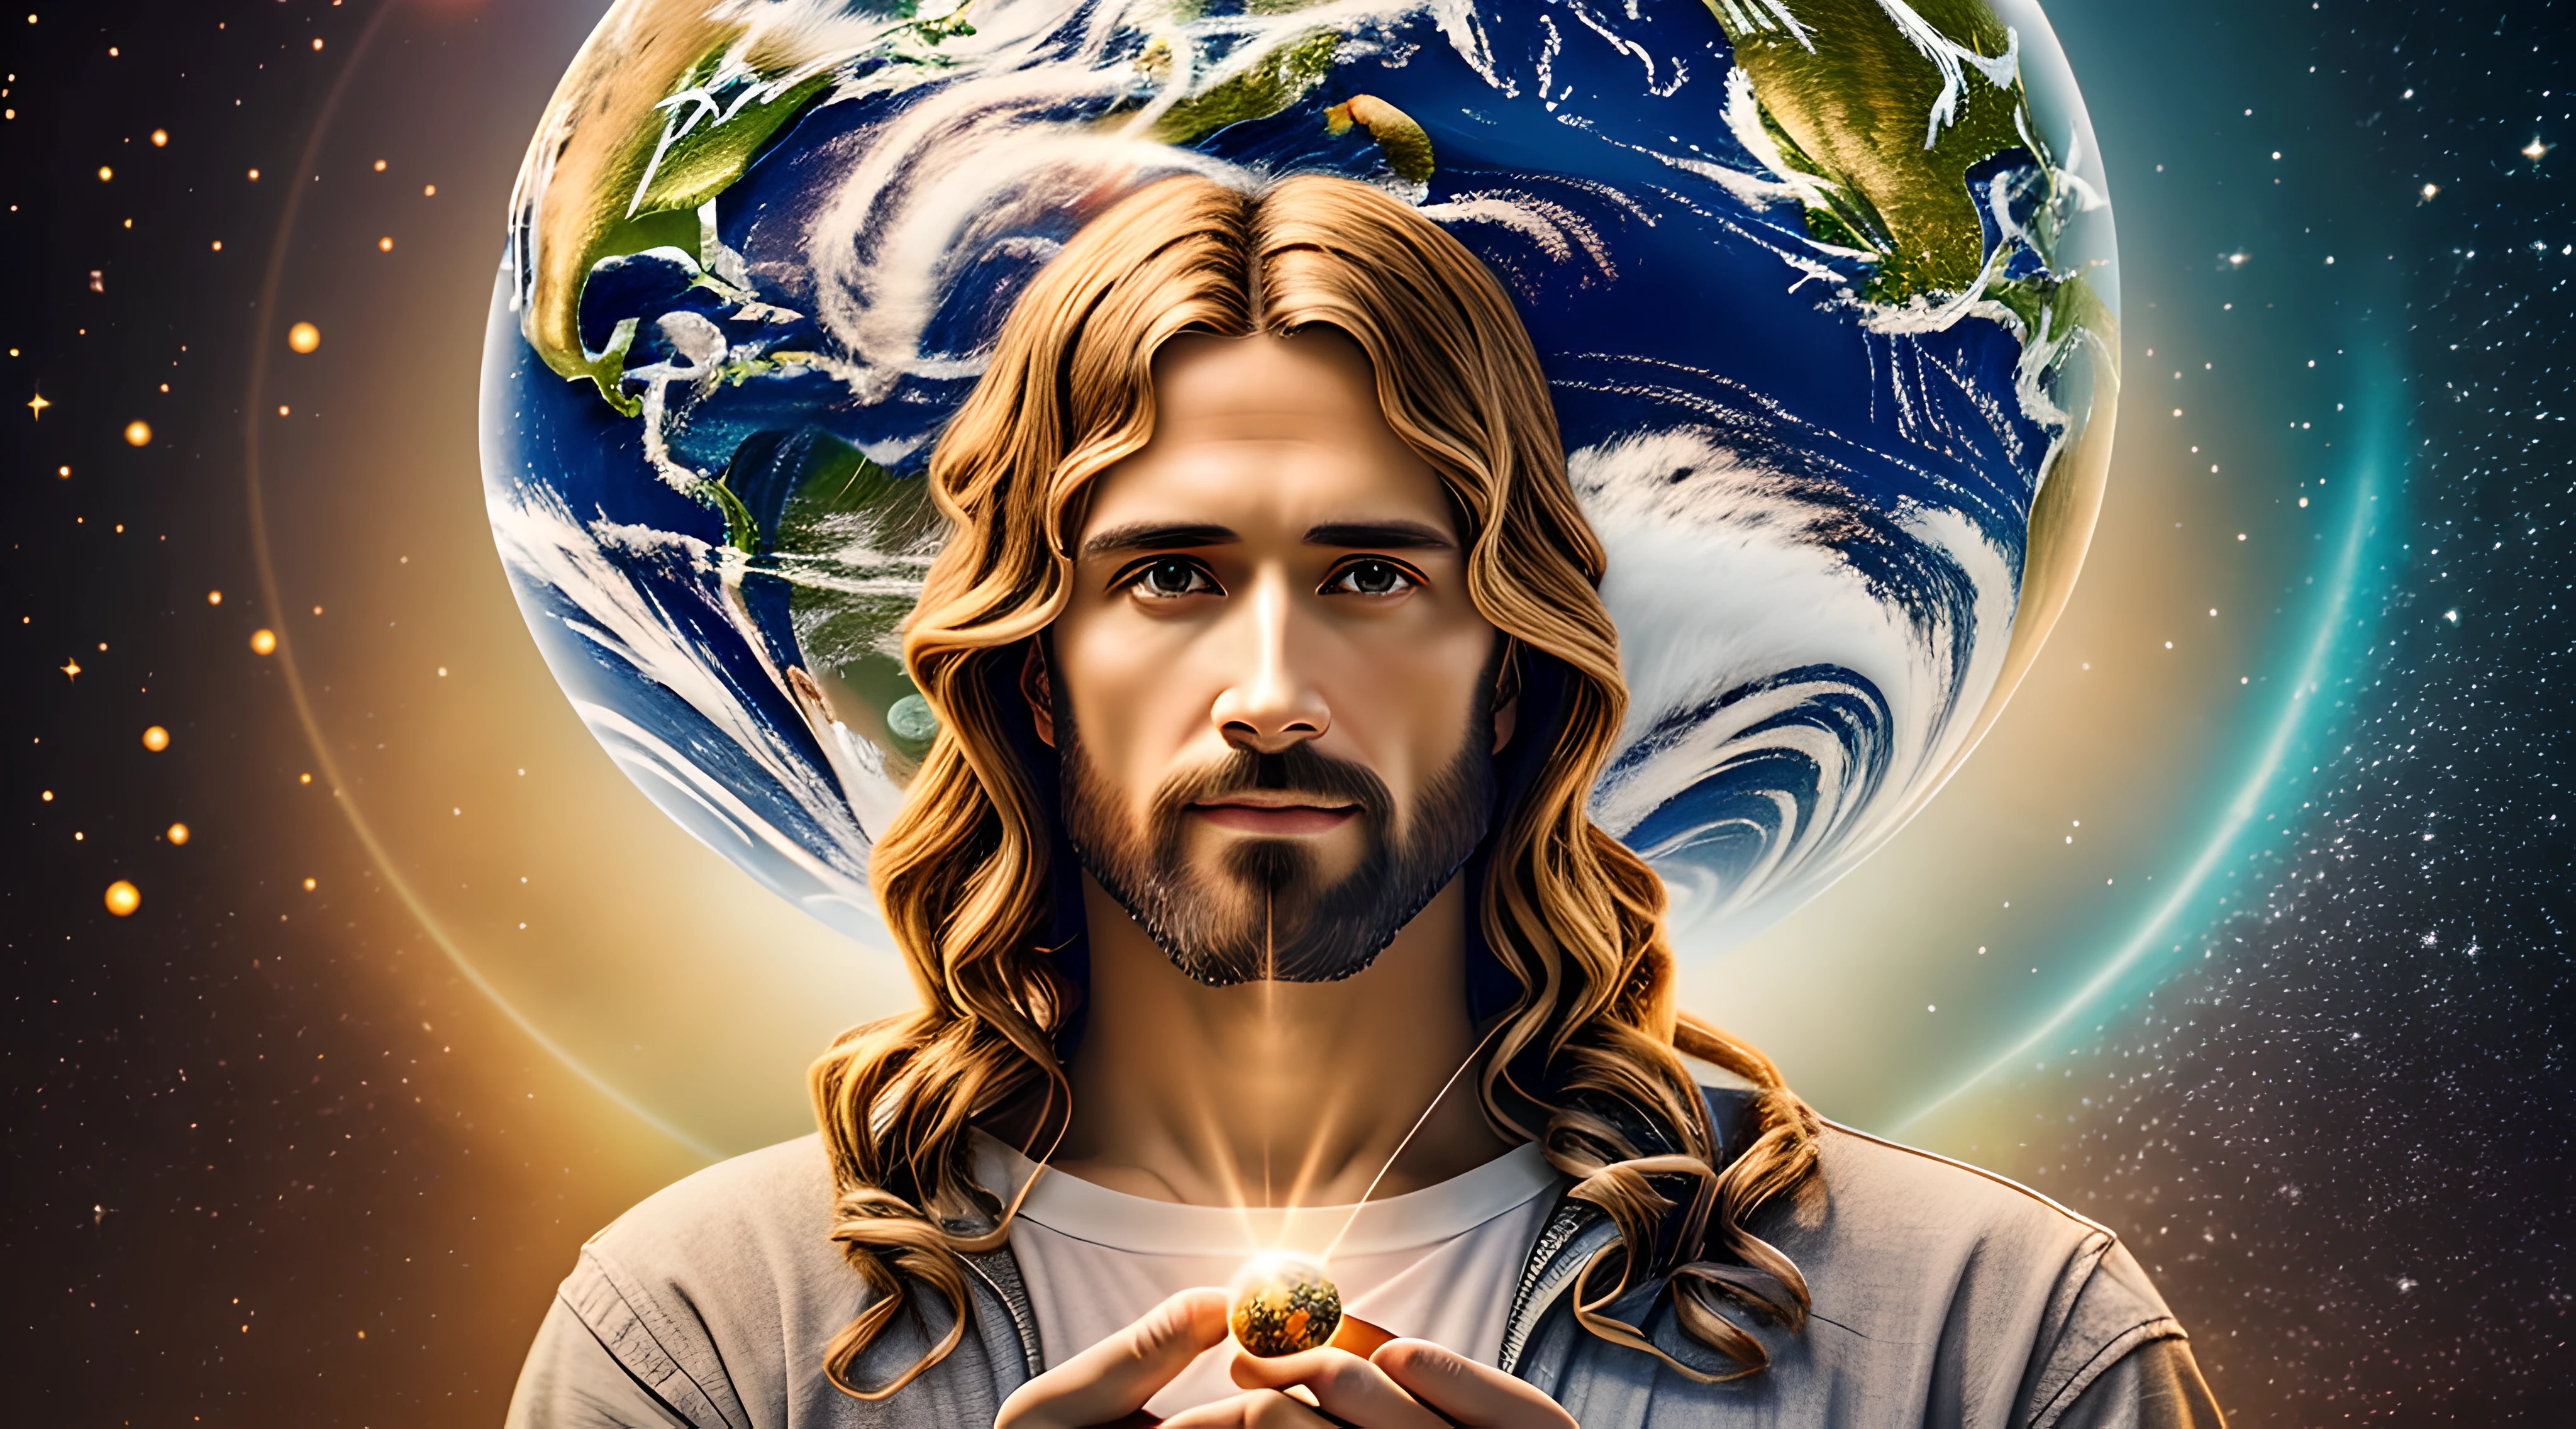 Realistisches Meisterwerk in 8k mit perfekter Anatomie: Jesus Christus hält den Planeten Erde in einer Hand, mit einem unverformten Gesicht, Filmische Beleuchtung, Tiefenschärfe, bokeh, Realismus, fotorealistisch, hyperRealismus, Professionelle Fotografie